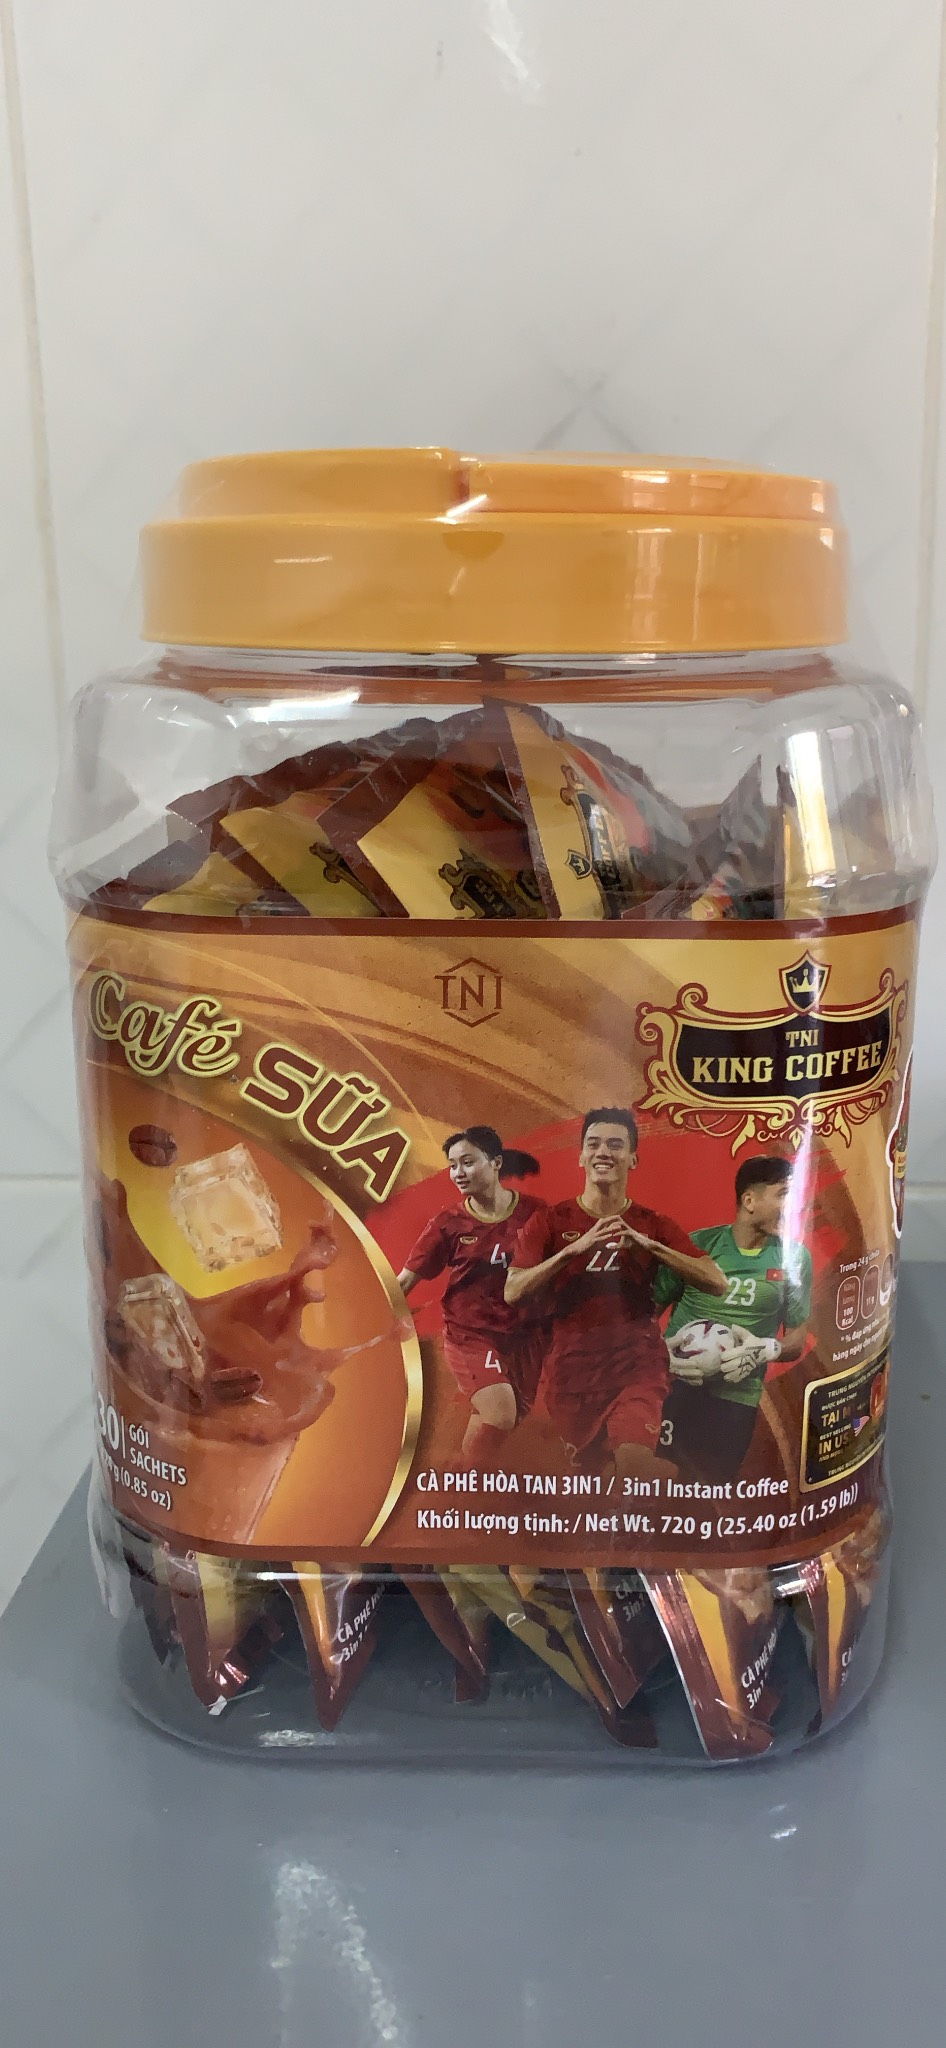 Cà Phê Sữa Hòa Tan 3IN1 KING COFFEE - Hộp nhựa 30 gói x 24g